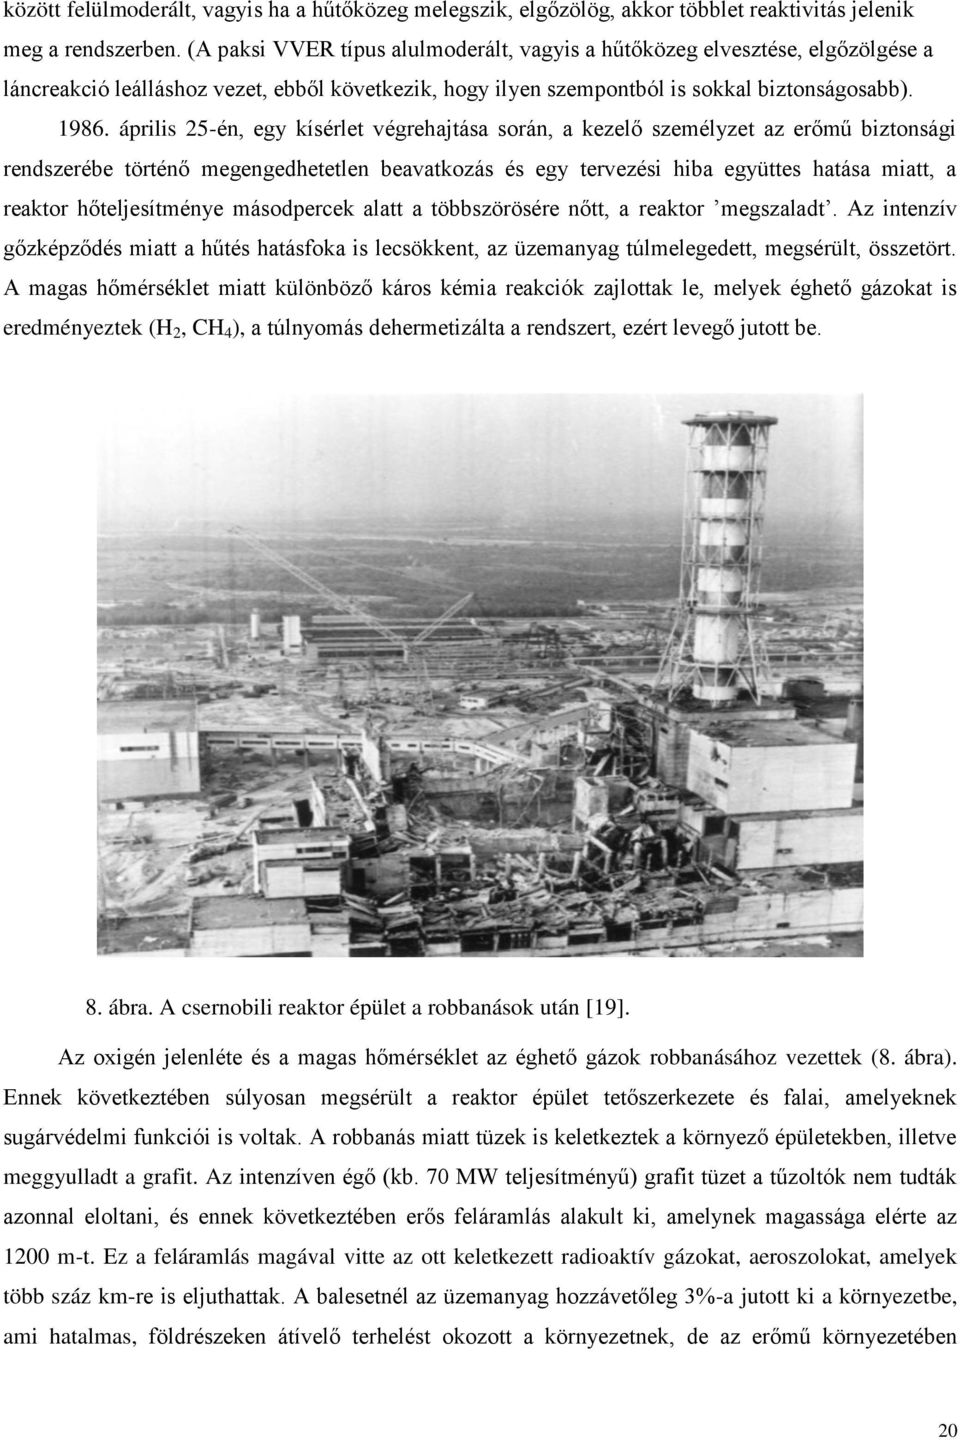 április 25-én, egy kísérlet végrehajtása során, a kezelő személyzet az erőmű biztonsági rendszerébe történő megengedhetetlen beavatkozás és egy tervezési hiba együttes hatása miatt, a reaktor